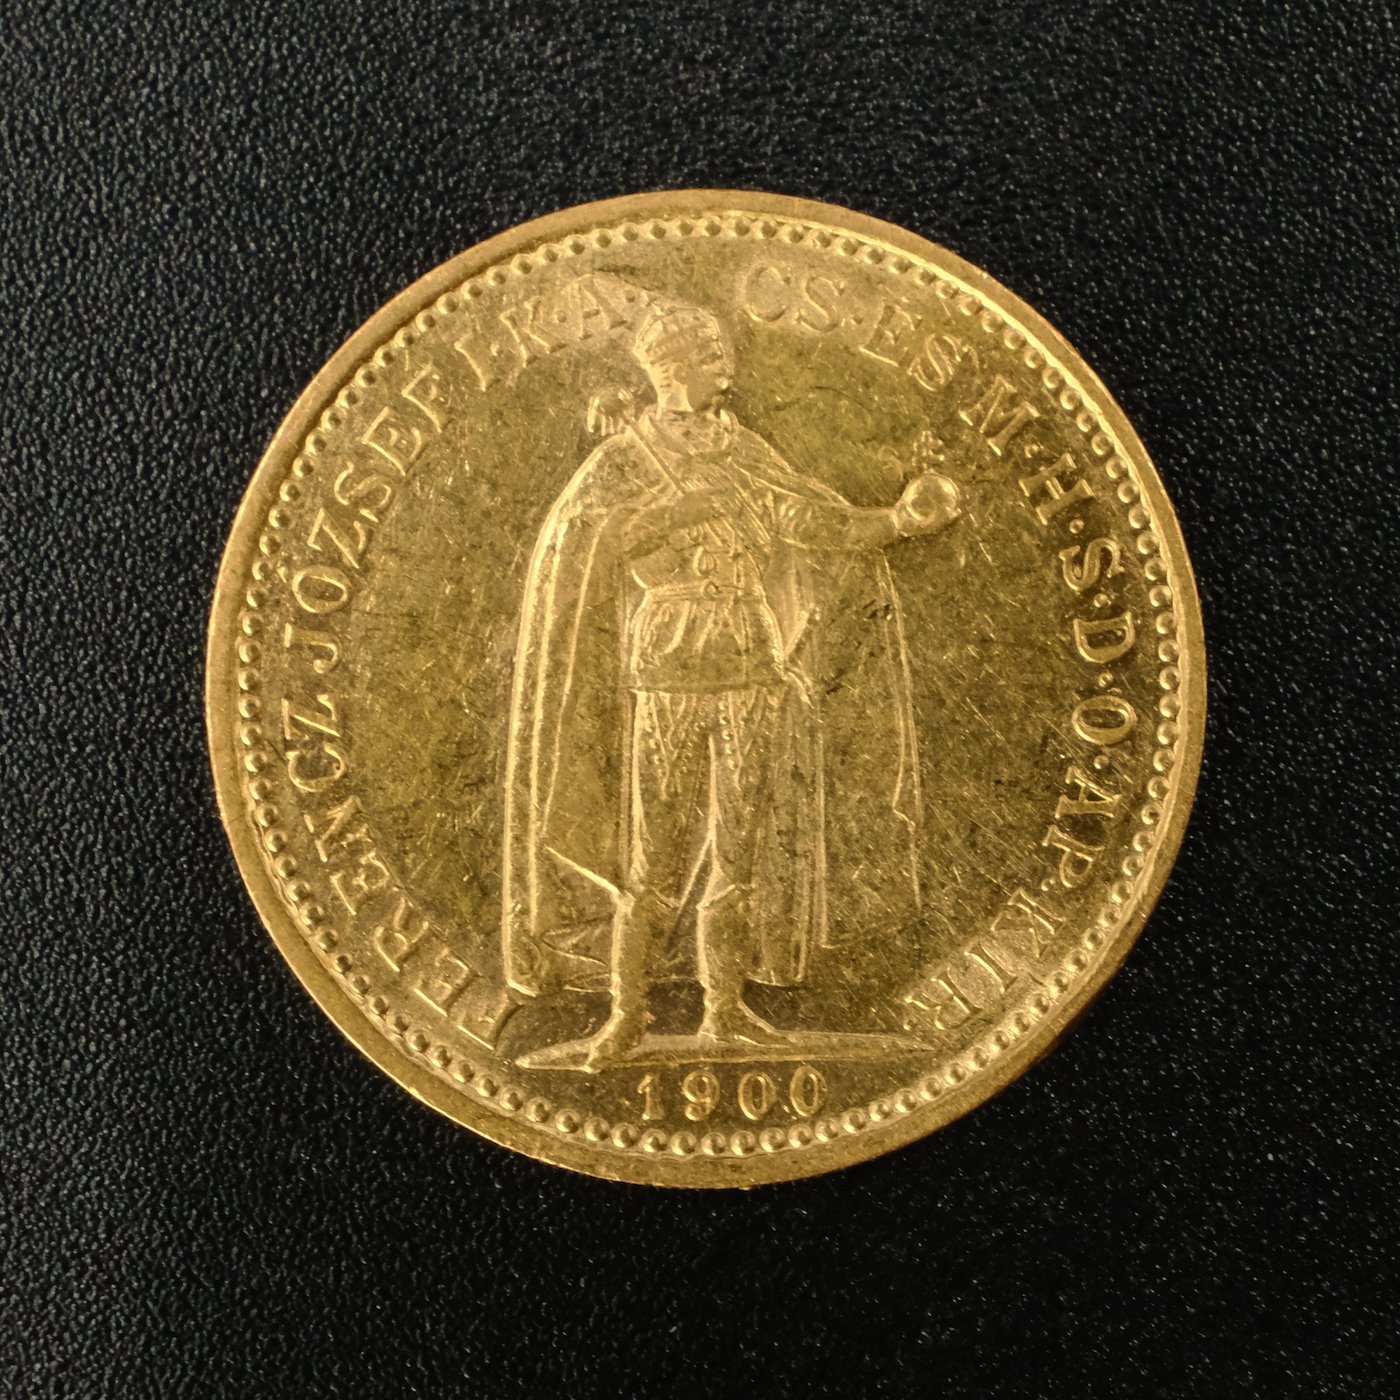 Mince - Rakousko Uhersko zlatá 10 Koruna 1900 K.B. uherská, zlato 900/1000, hrubá hmotnost mince 3,387g